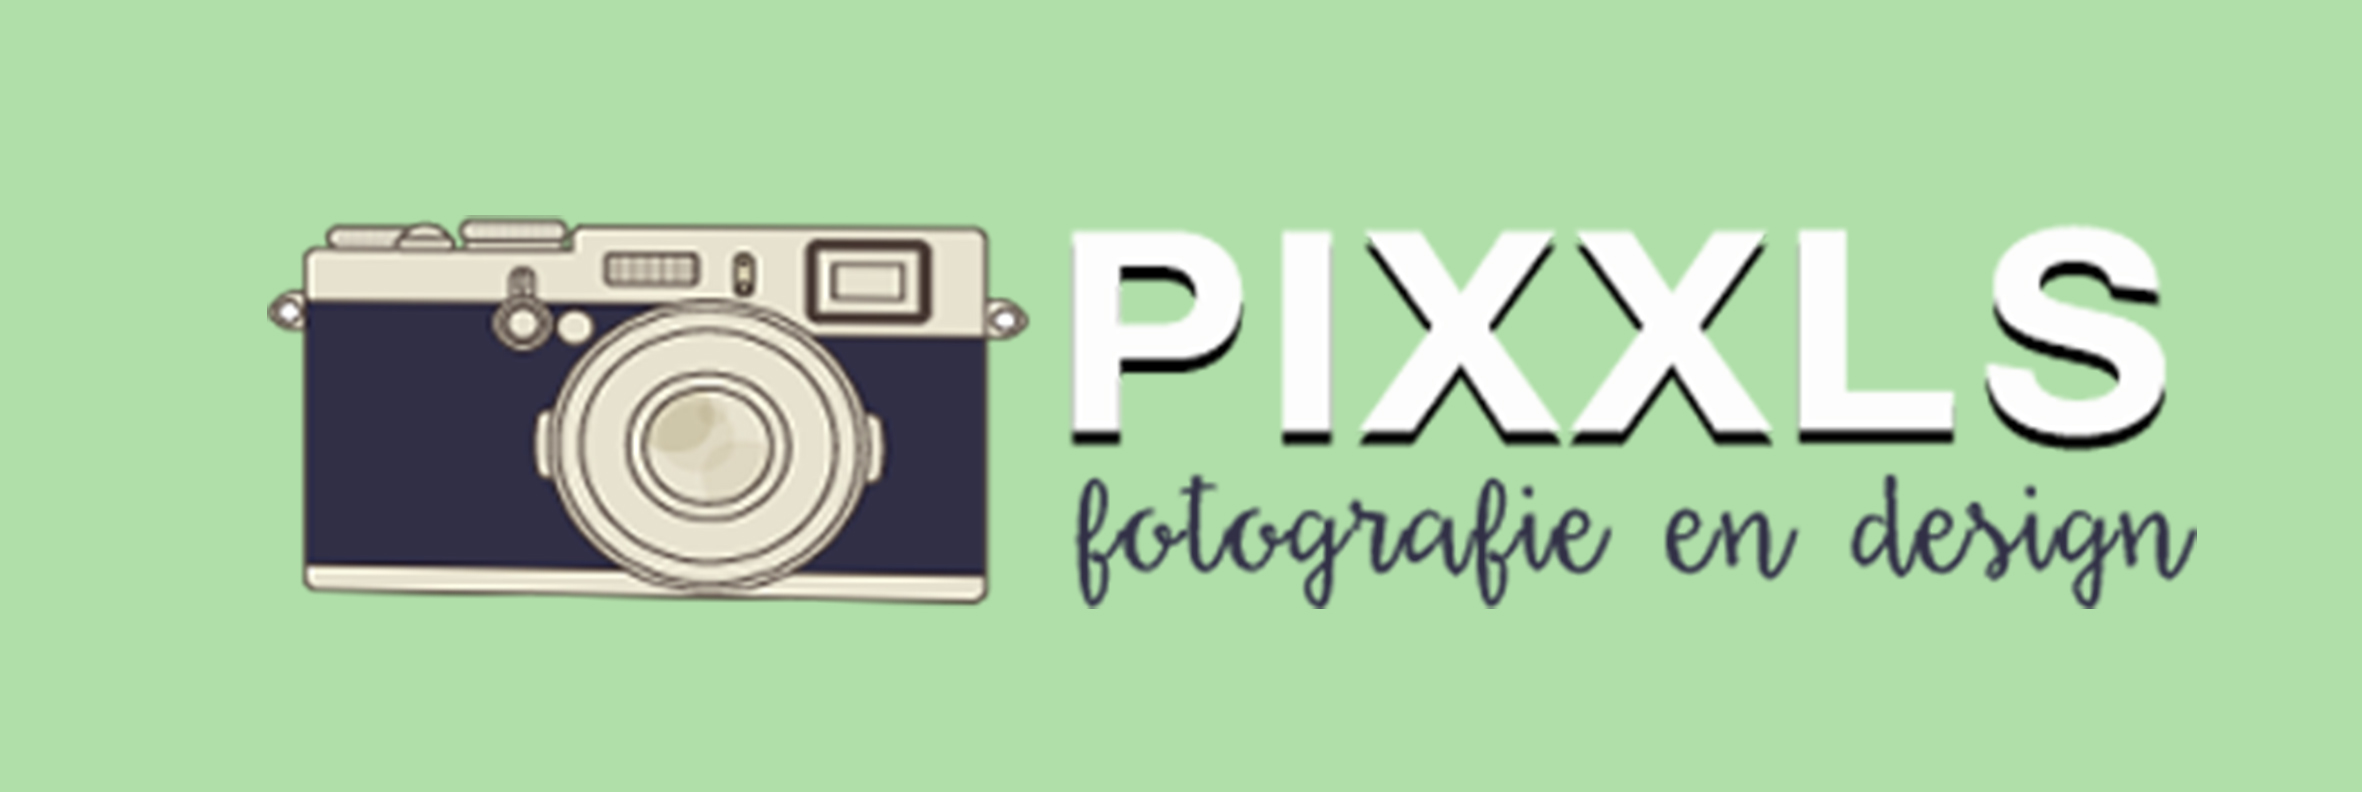 Pixxls Fotografie